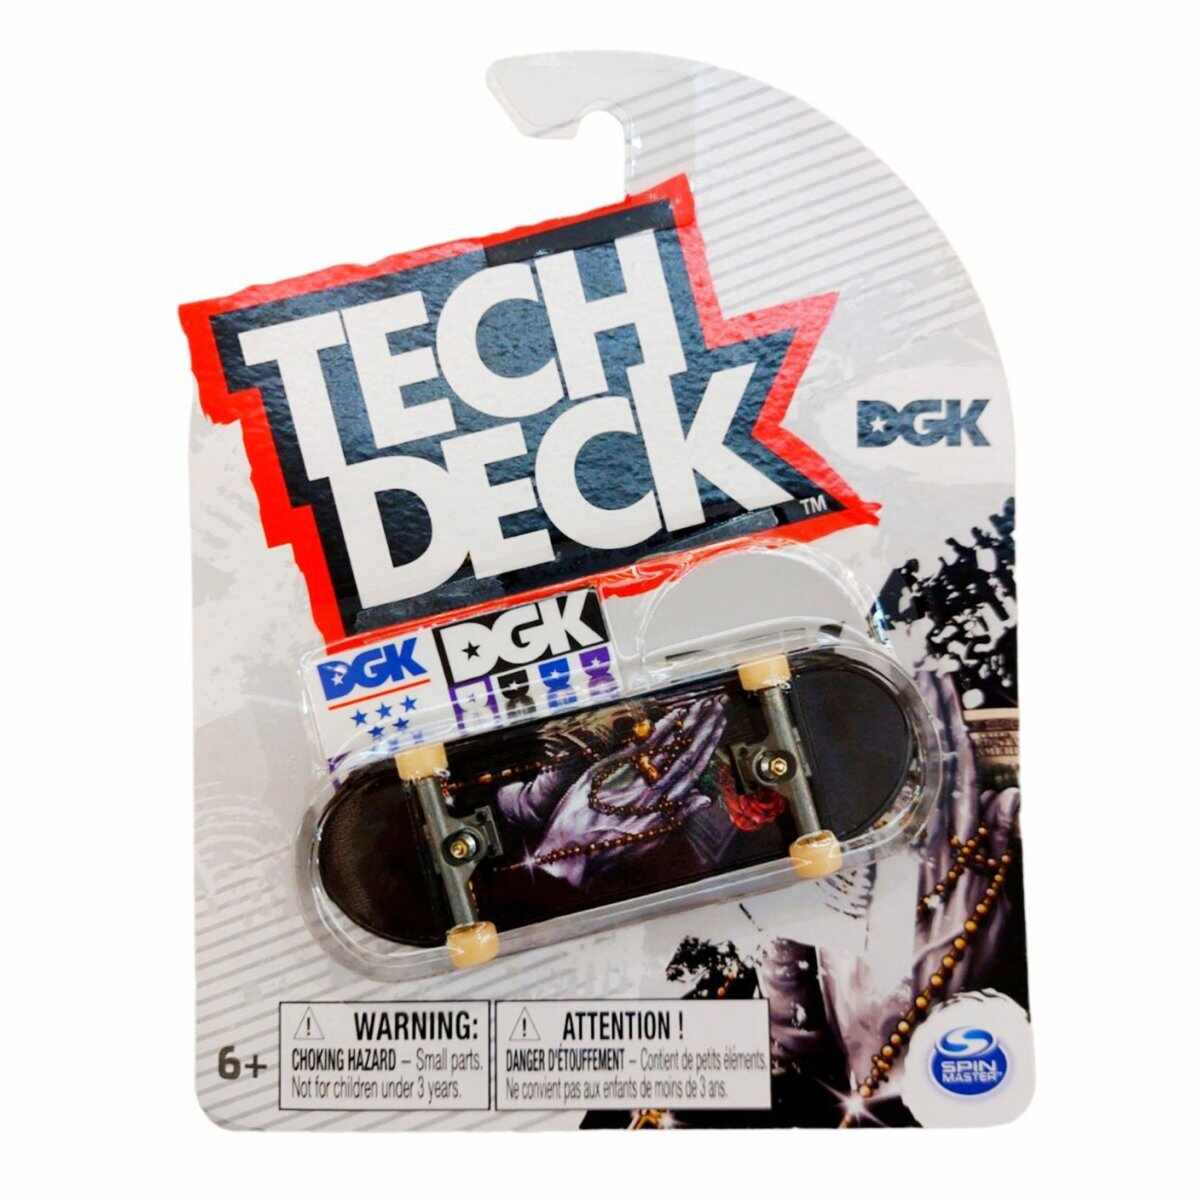 Mini placa skateboard Tech Deck, DGK, 20136354